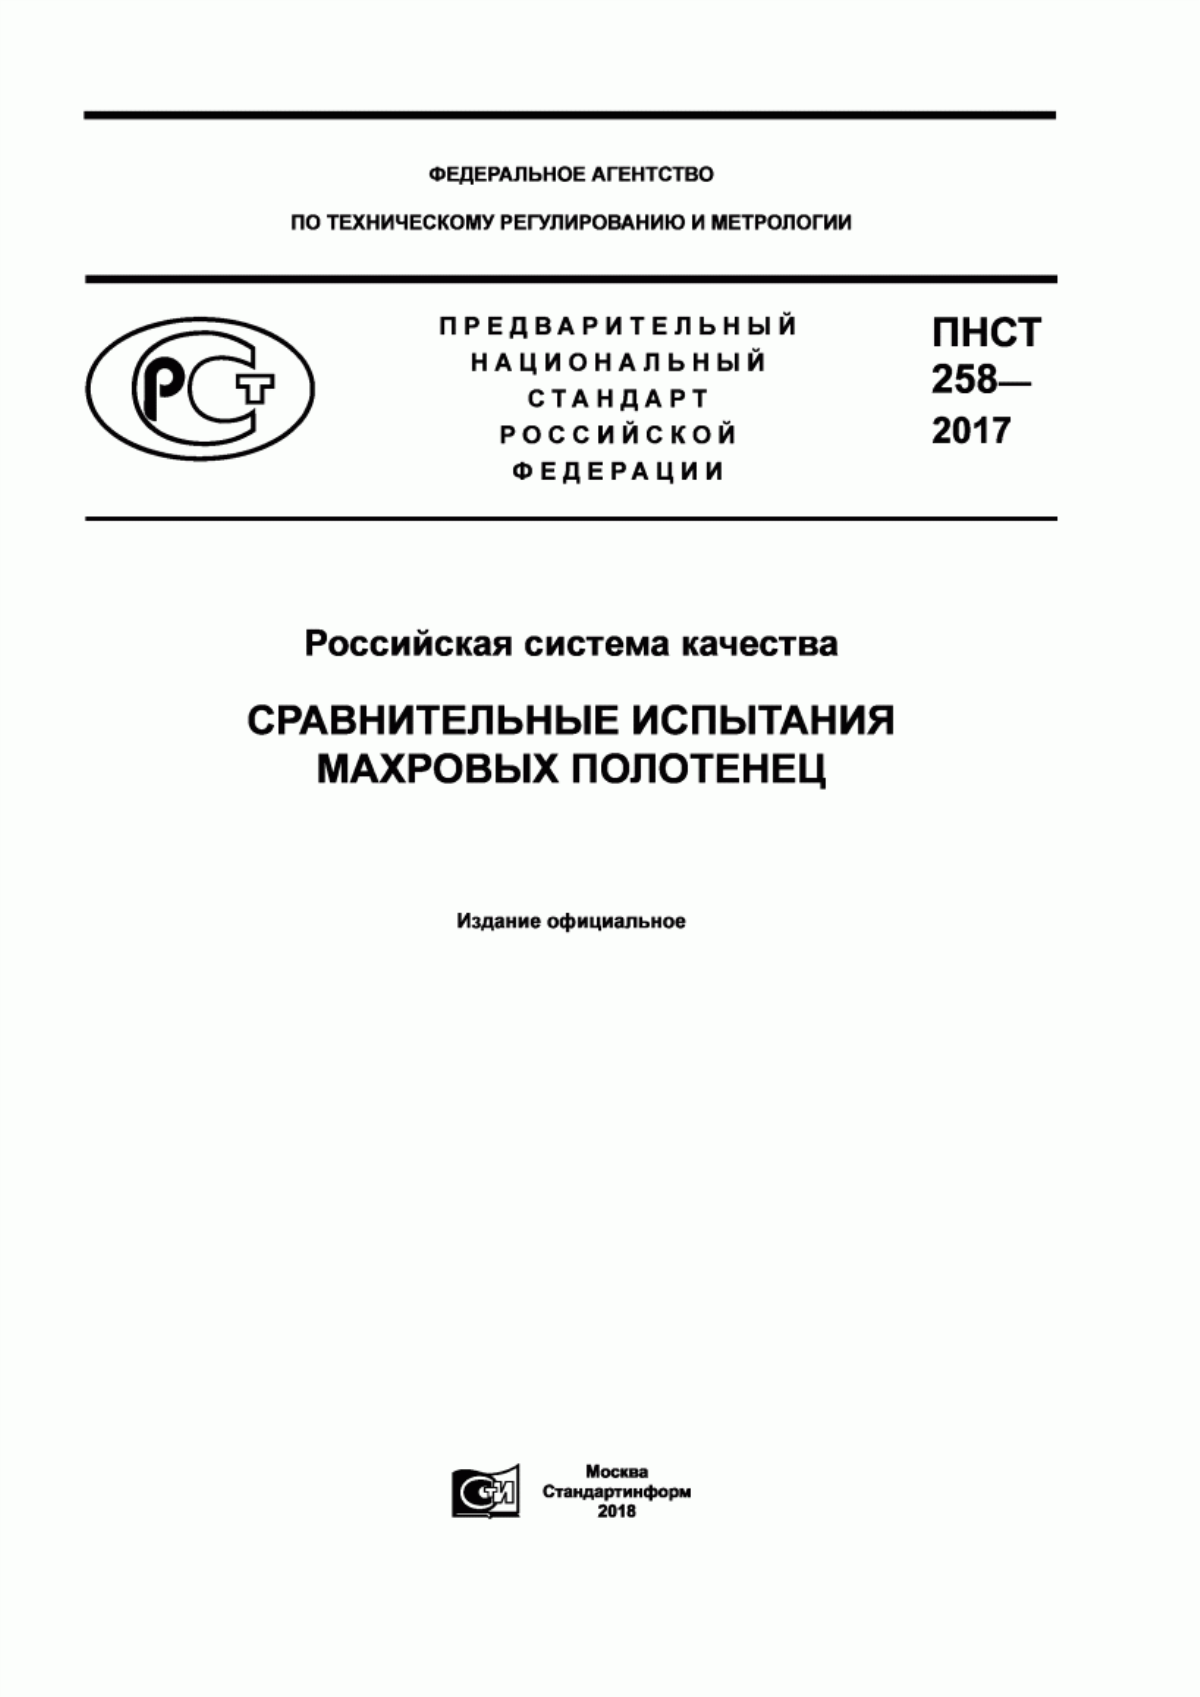 ПНСТ 258-2017 Российская система качества. Сравнительные испытания махровых полотенец